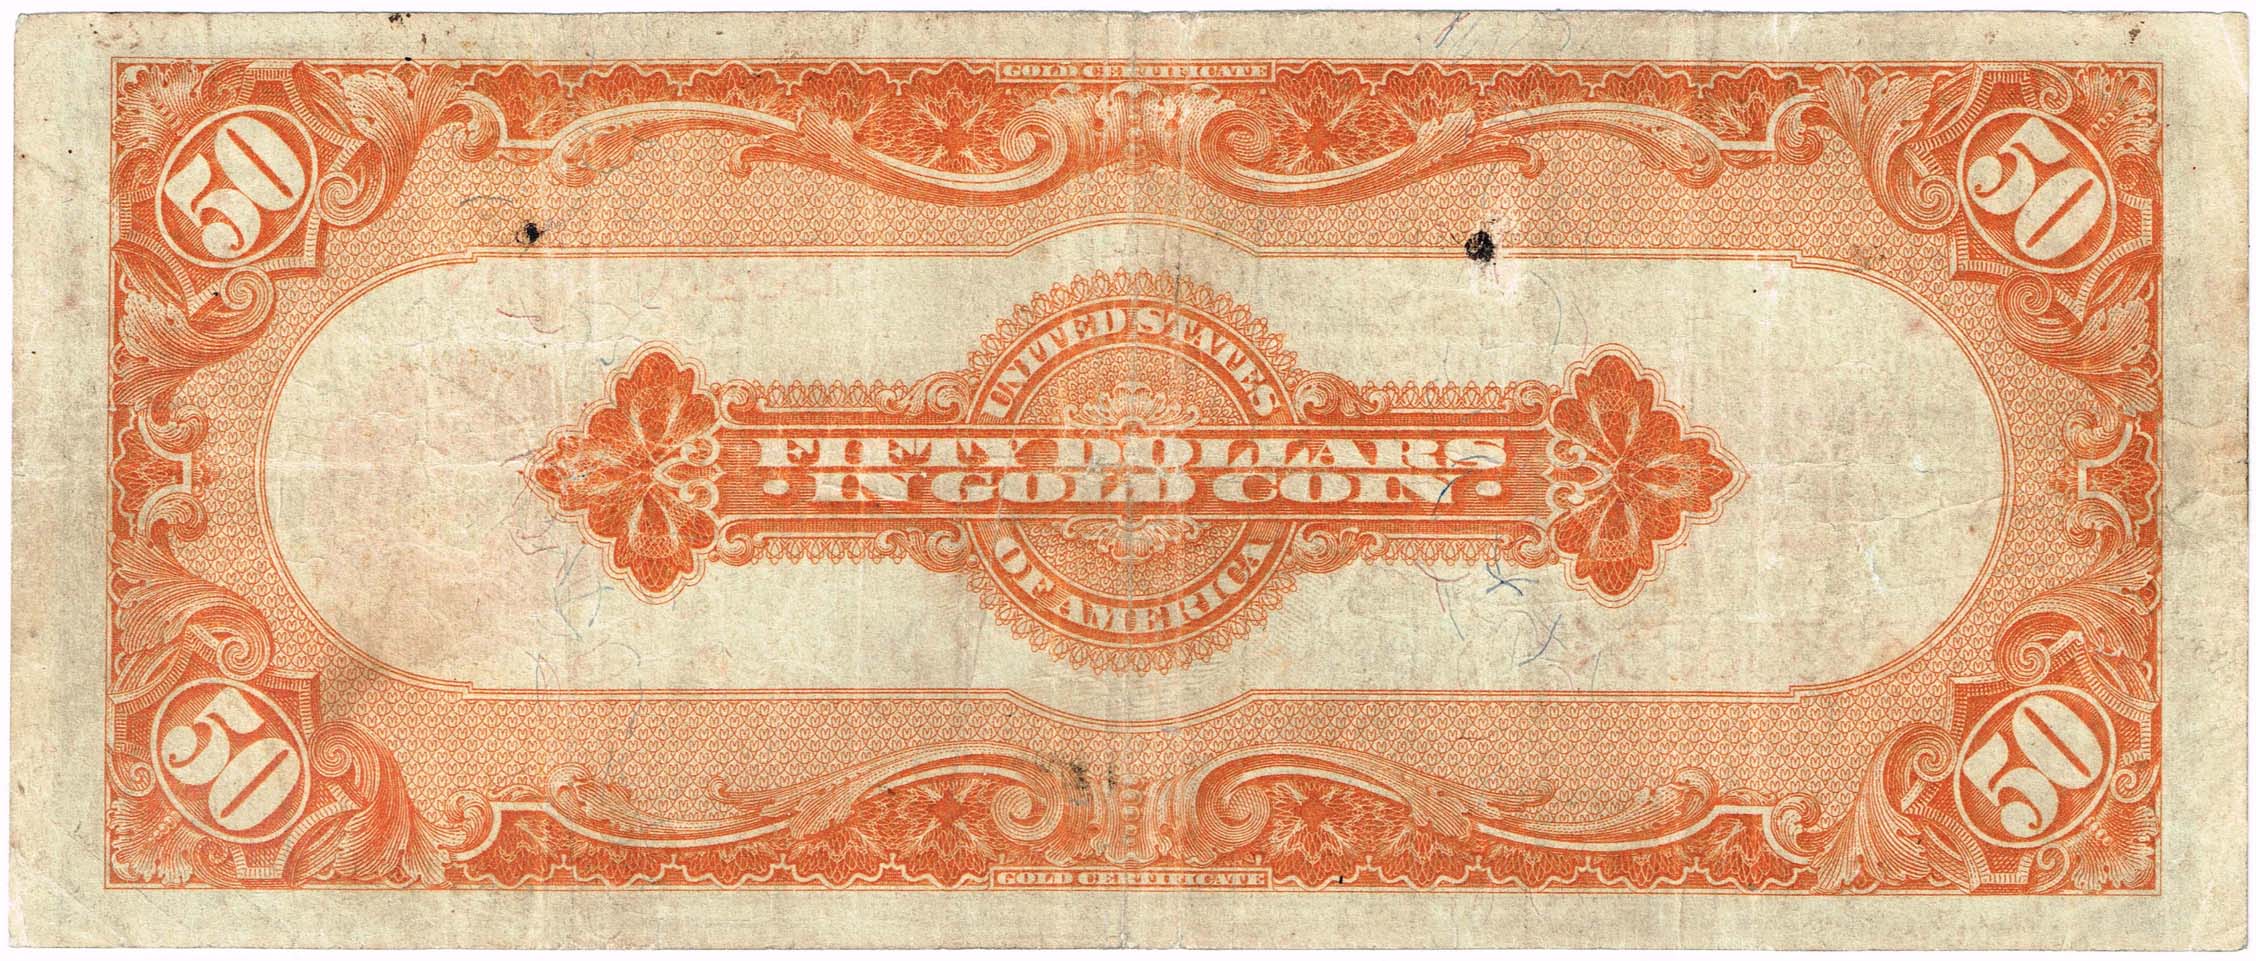 Stati Uniti_50 dollari 1922_gold certificate_bollino giallo_rovescio